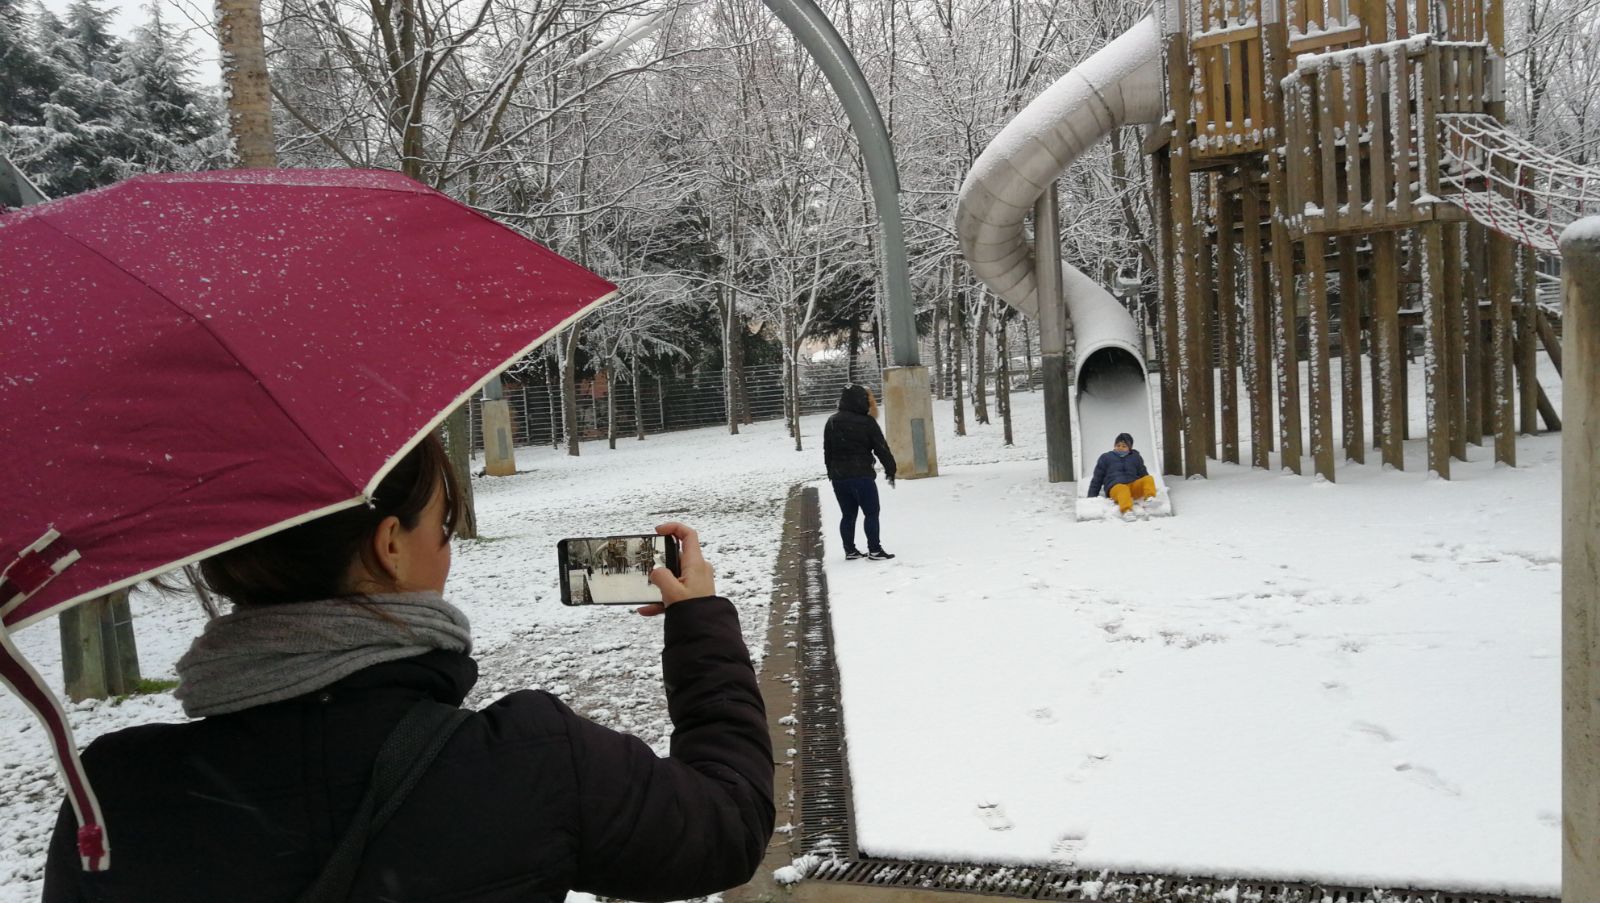 Moltes persones han aprofitat per fer fotos de la neu allà on s'ha acumulat. A la foto, el parc dels Colors de Mollet